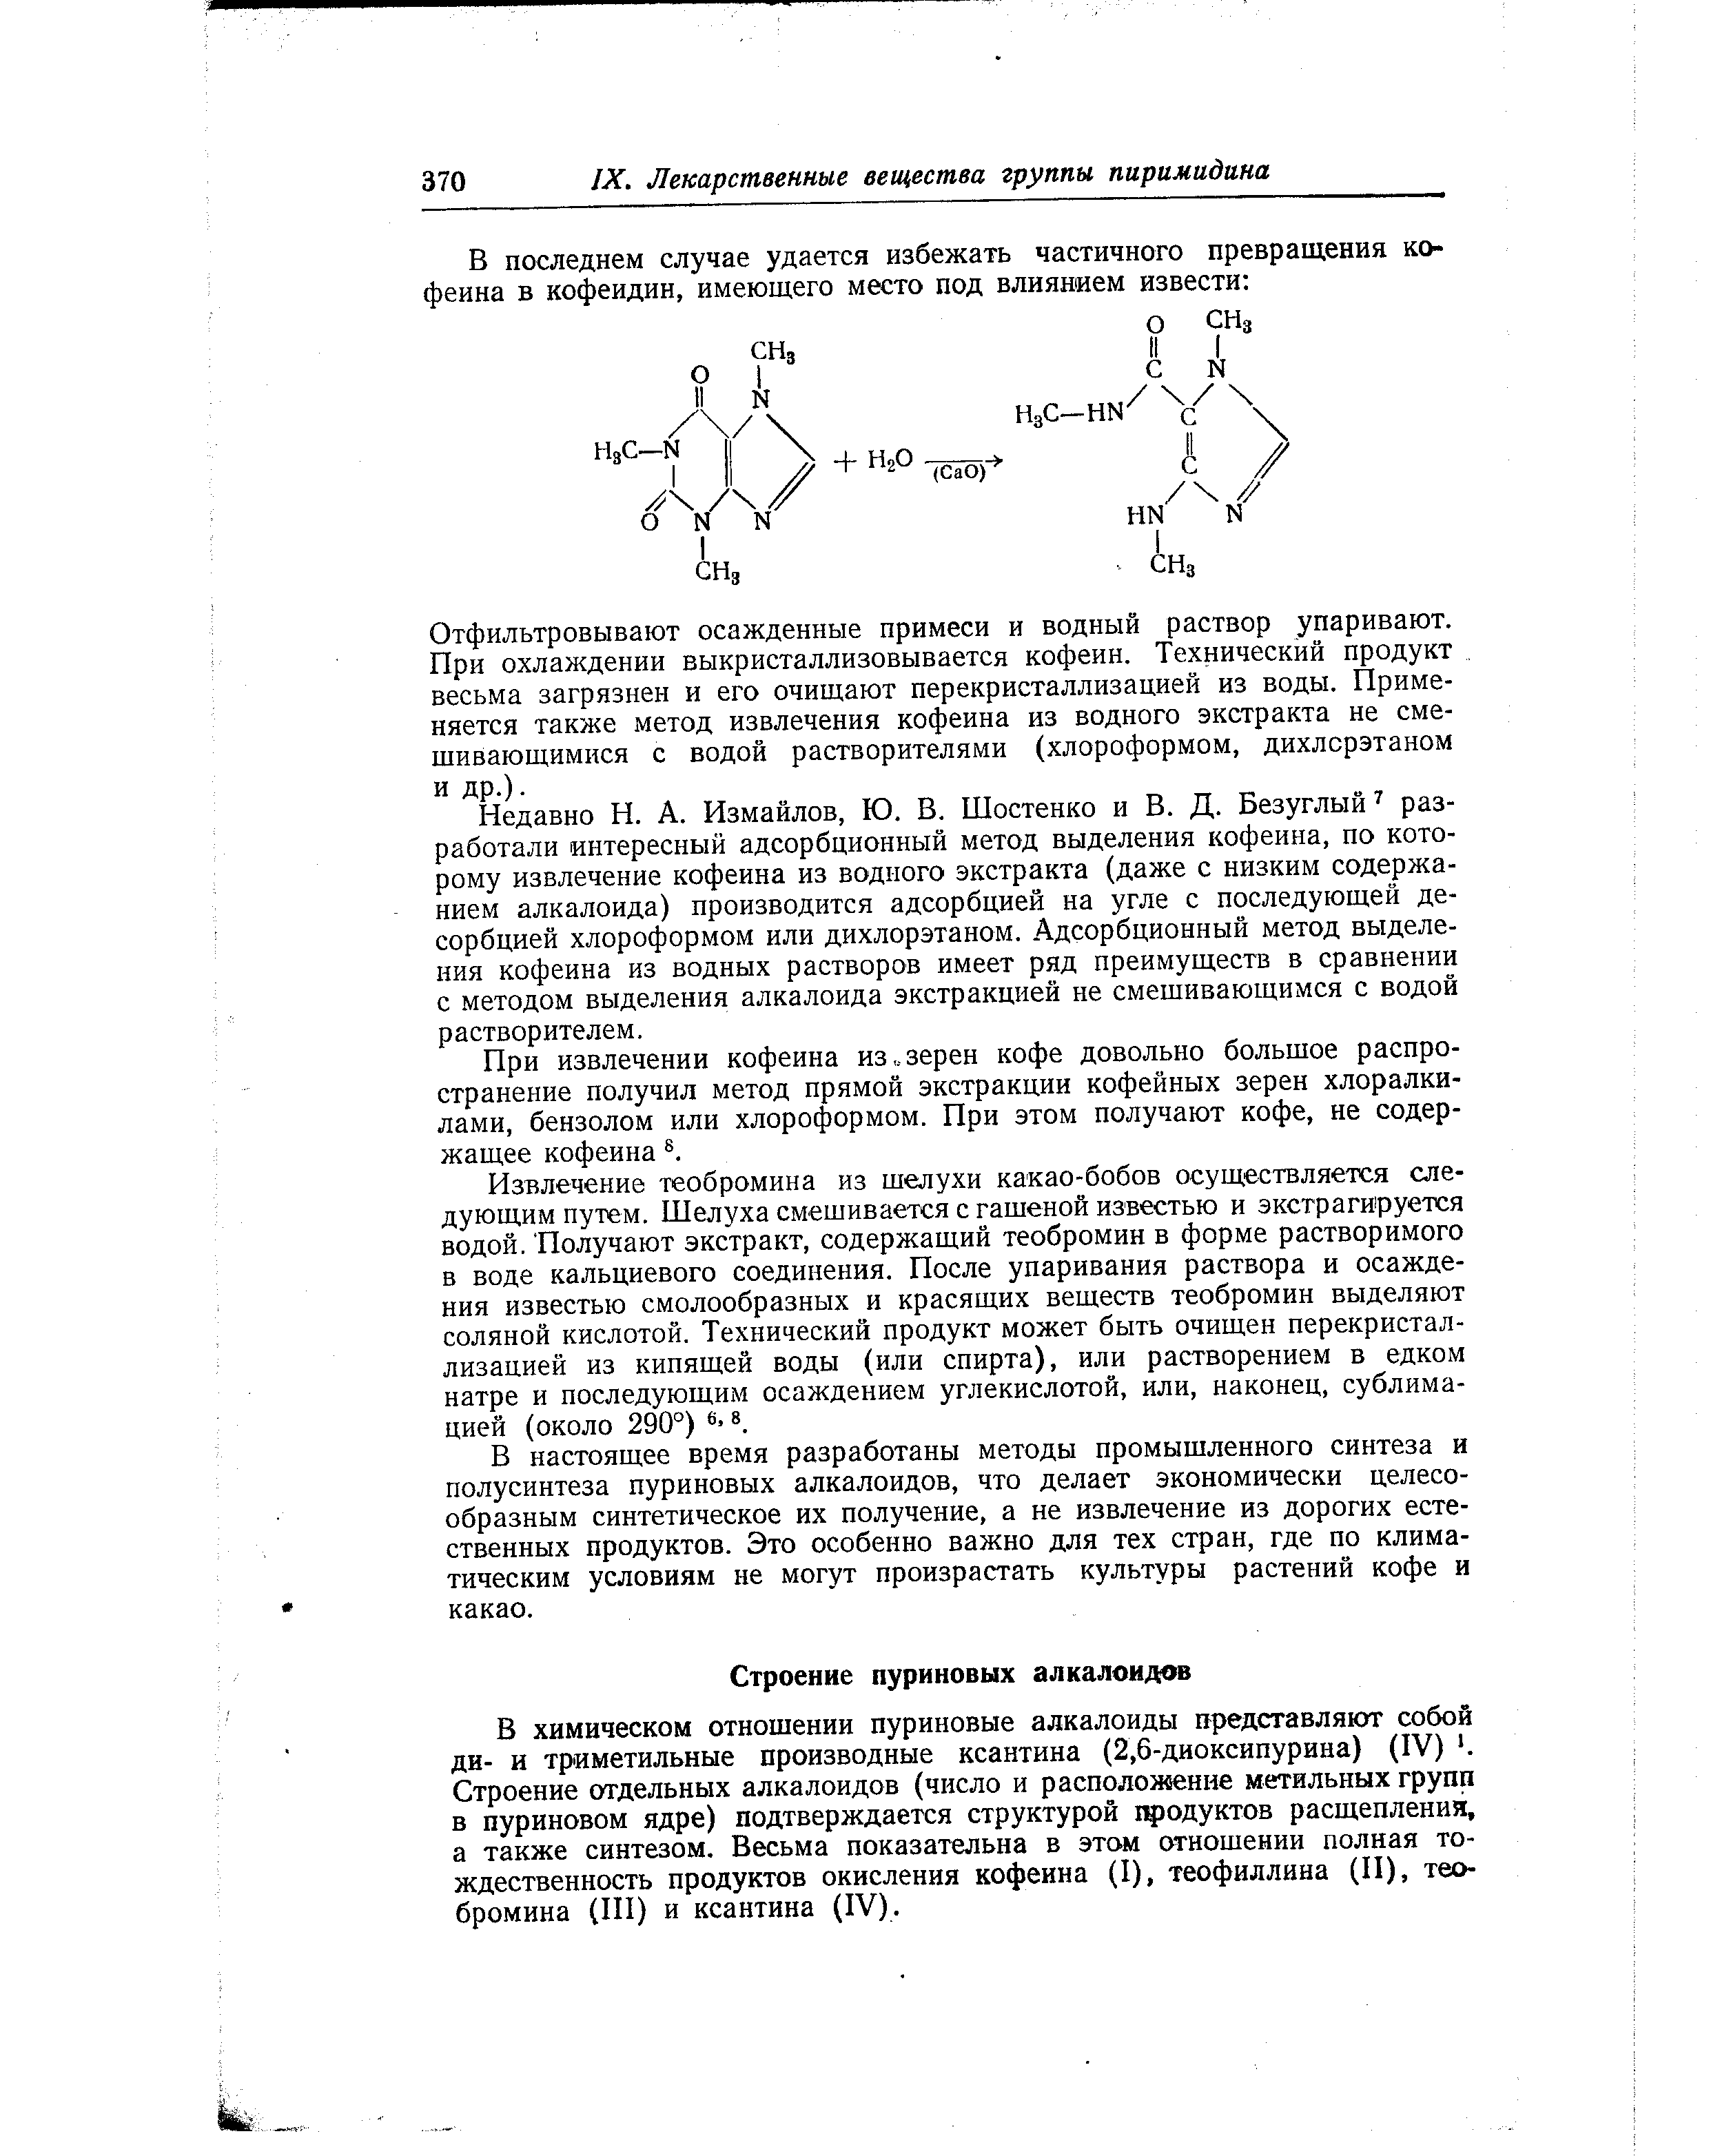 В химическом отношении пуриновые алкалоиды представляют собой ди- и триметильные производные ксантина (2,6-диоксипурина) (IV) . Строение отдельных алкалоидов (число и расположение метальных групп в пуриновом ядре) подтверждается структурой продуктов расщепления, а также синтезом. Весьма показательна в этом отношении полная тождественность продуктов окисления кофеина (I), теофиллина (II), теобромина (III) и ксантина (IV).